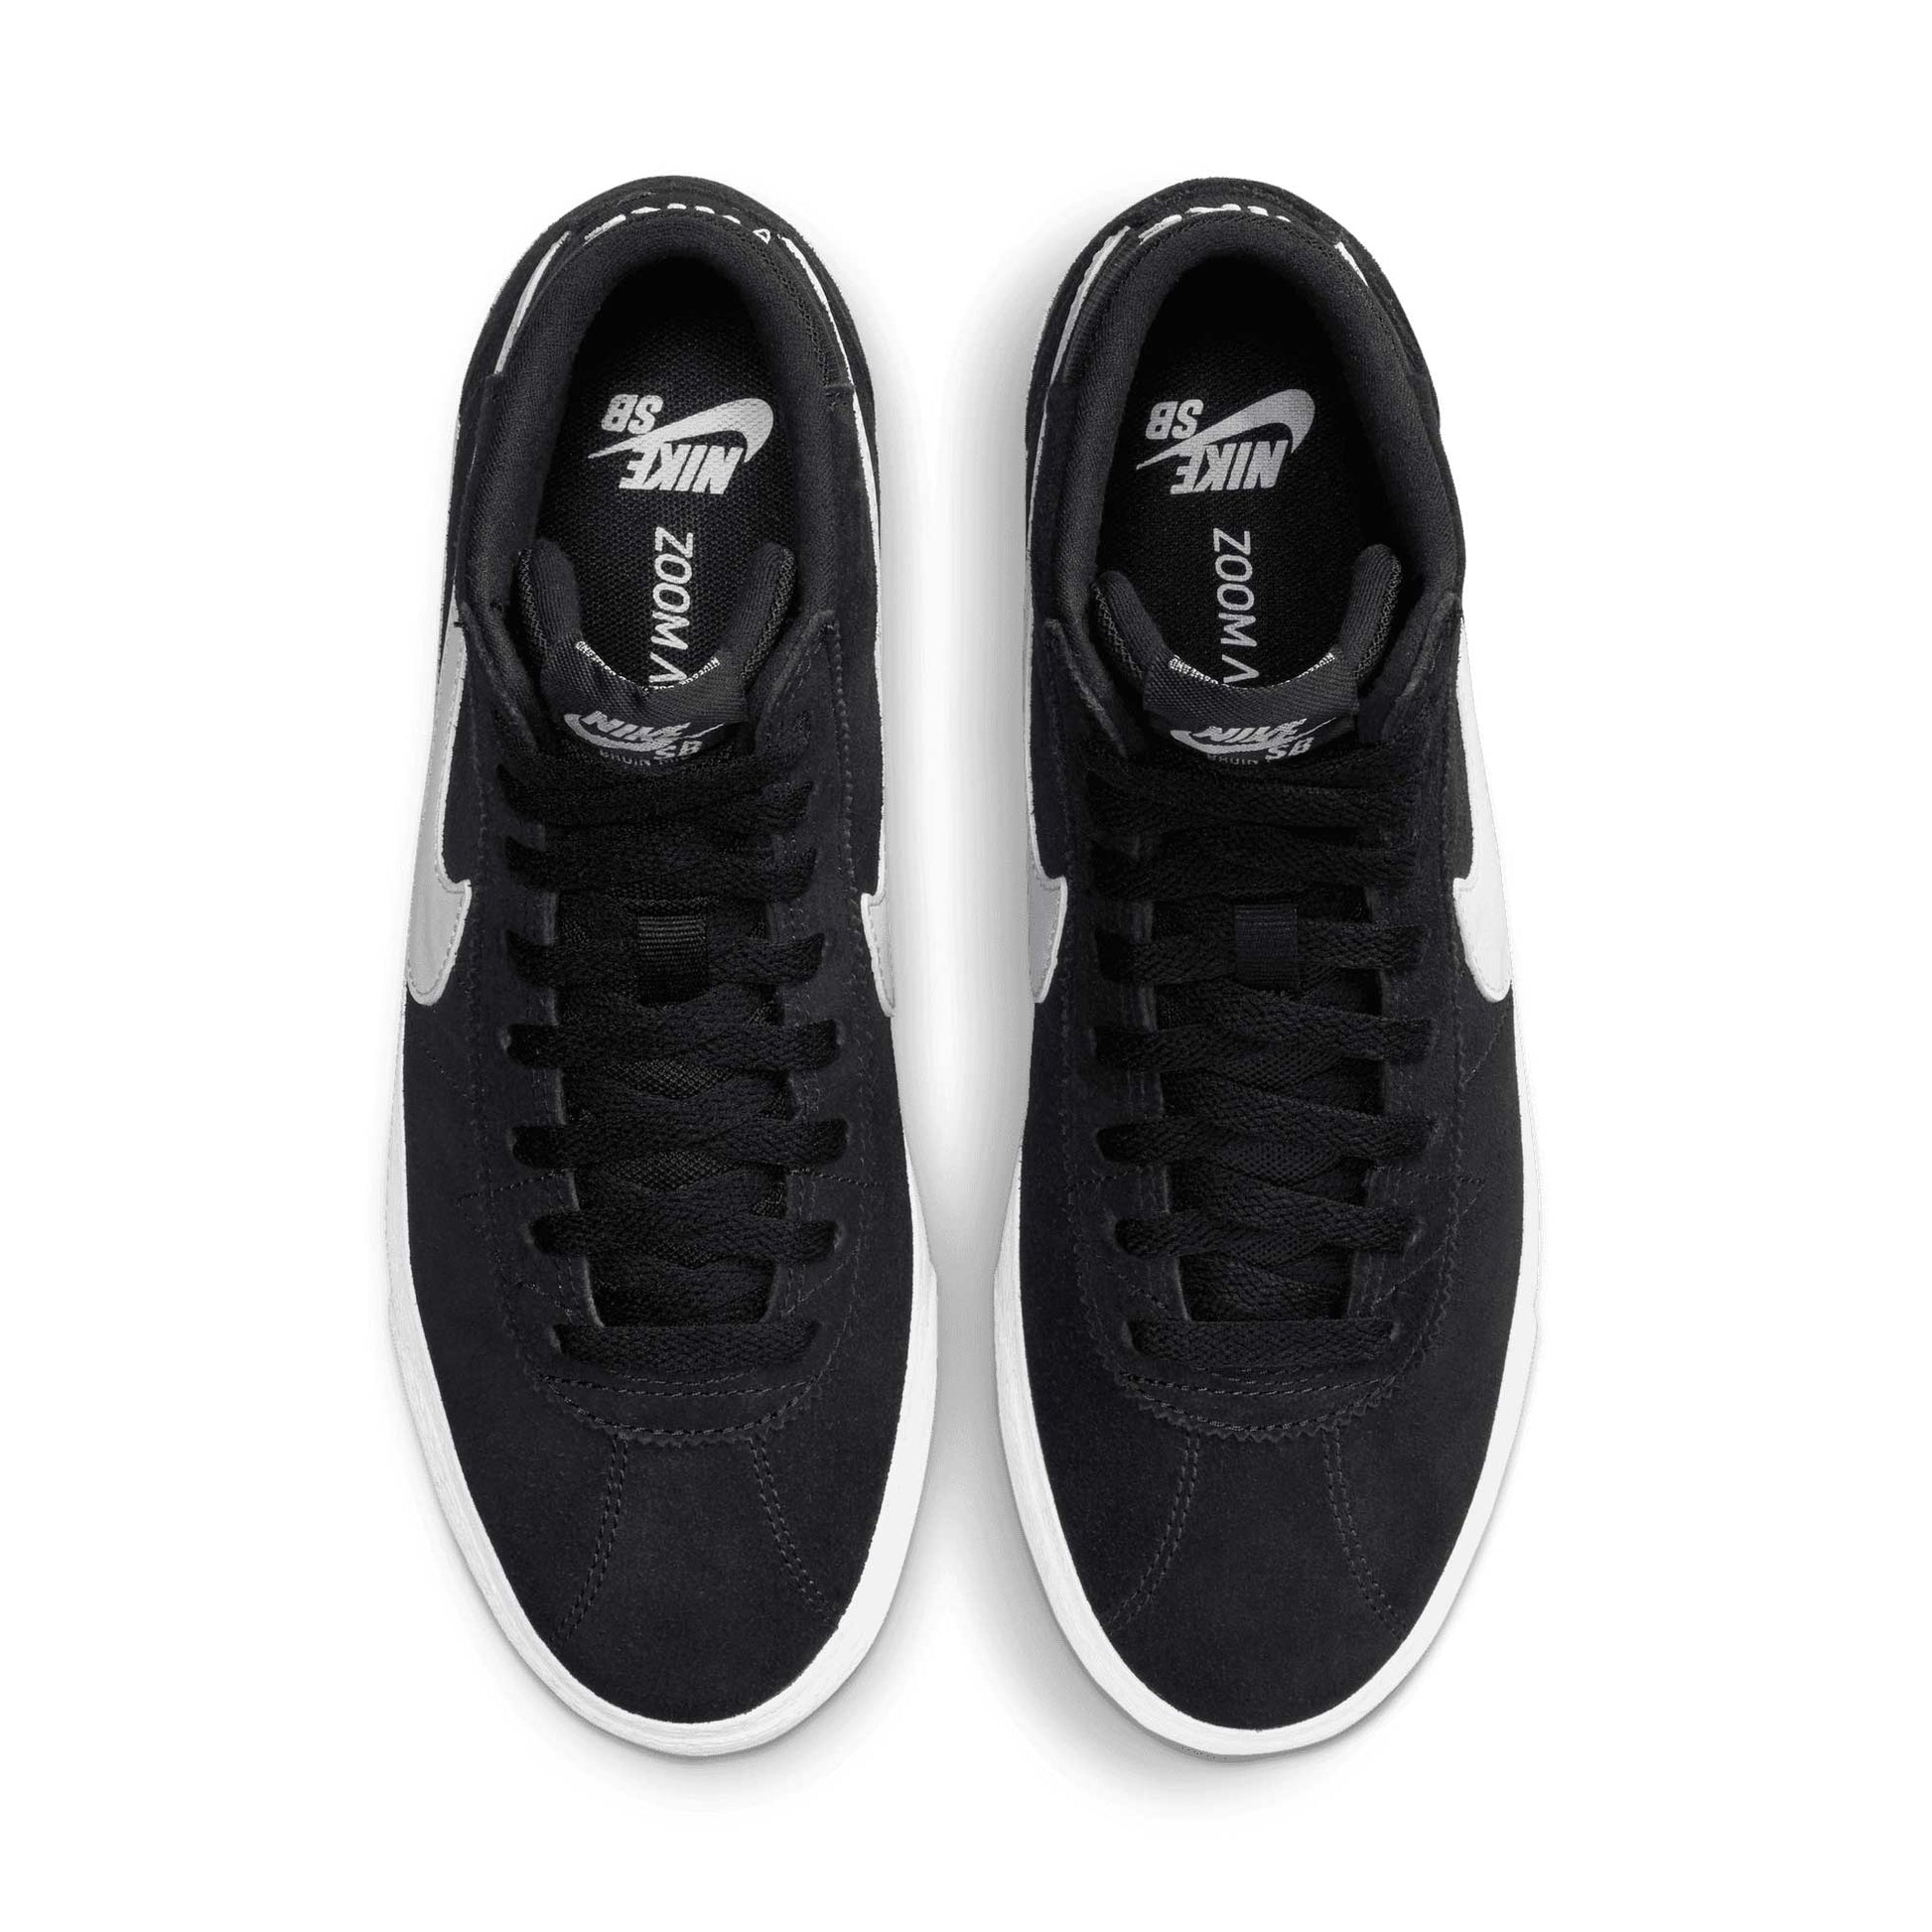 Nike SB Bruin High, black/white-black-gum light brown - Tiki Room Skateboards - 2